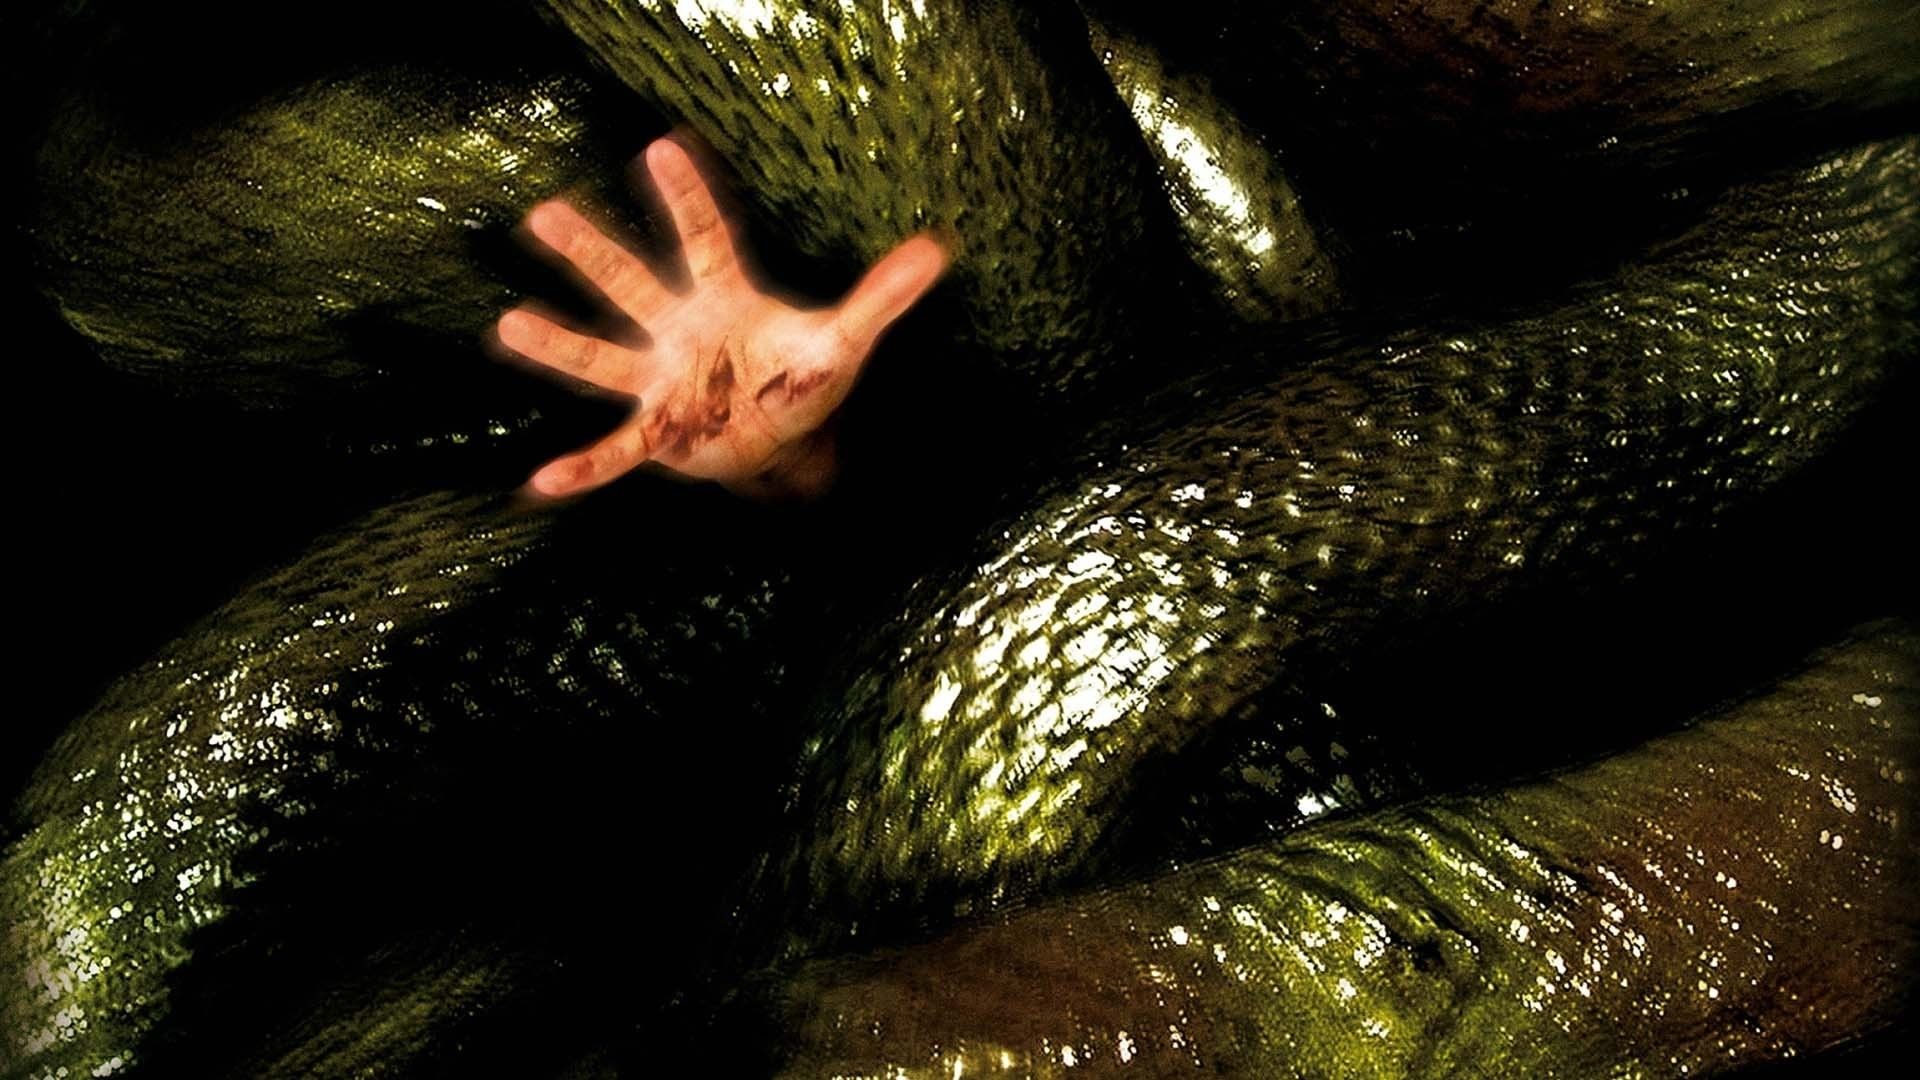 دانلود فیلم Anacondas: The Hunt for the Blood Orchid 2004